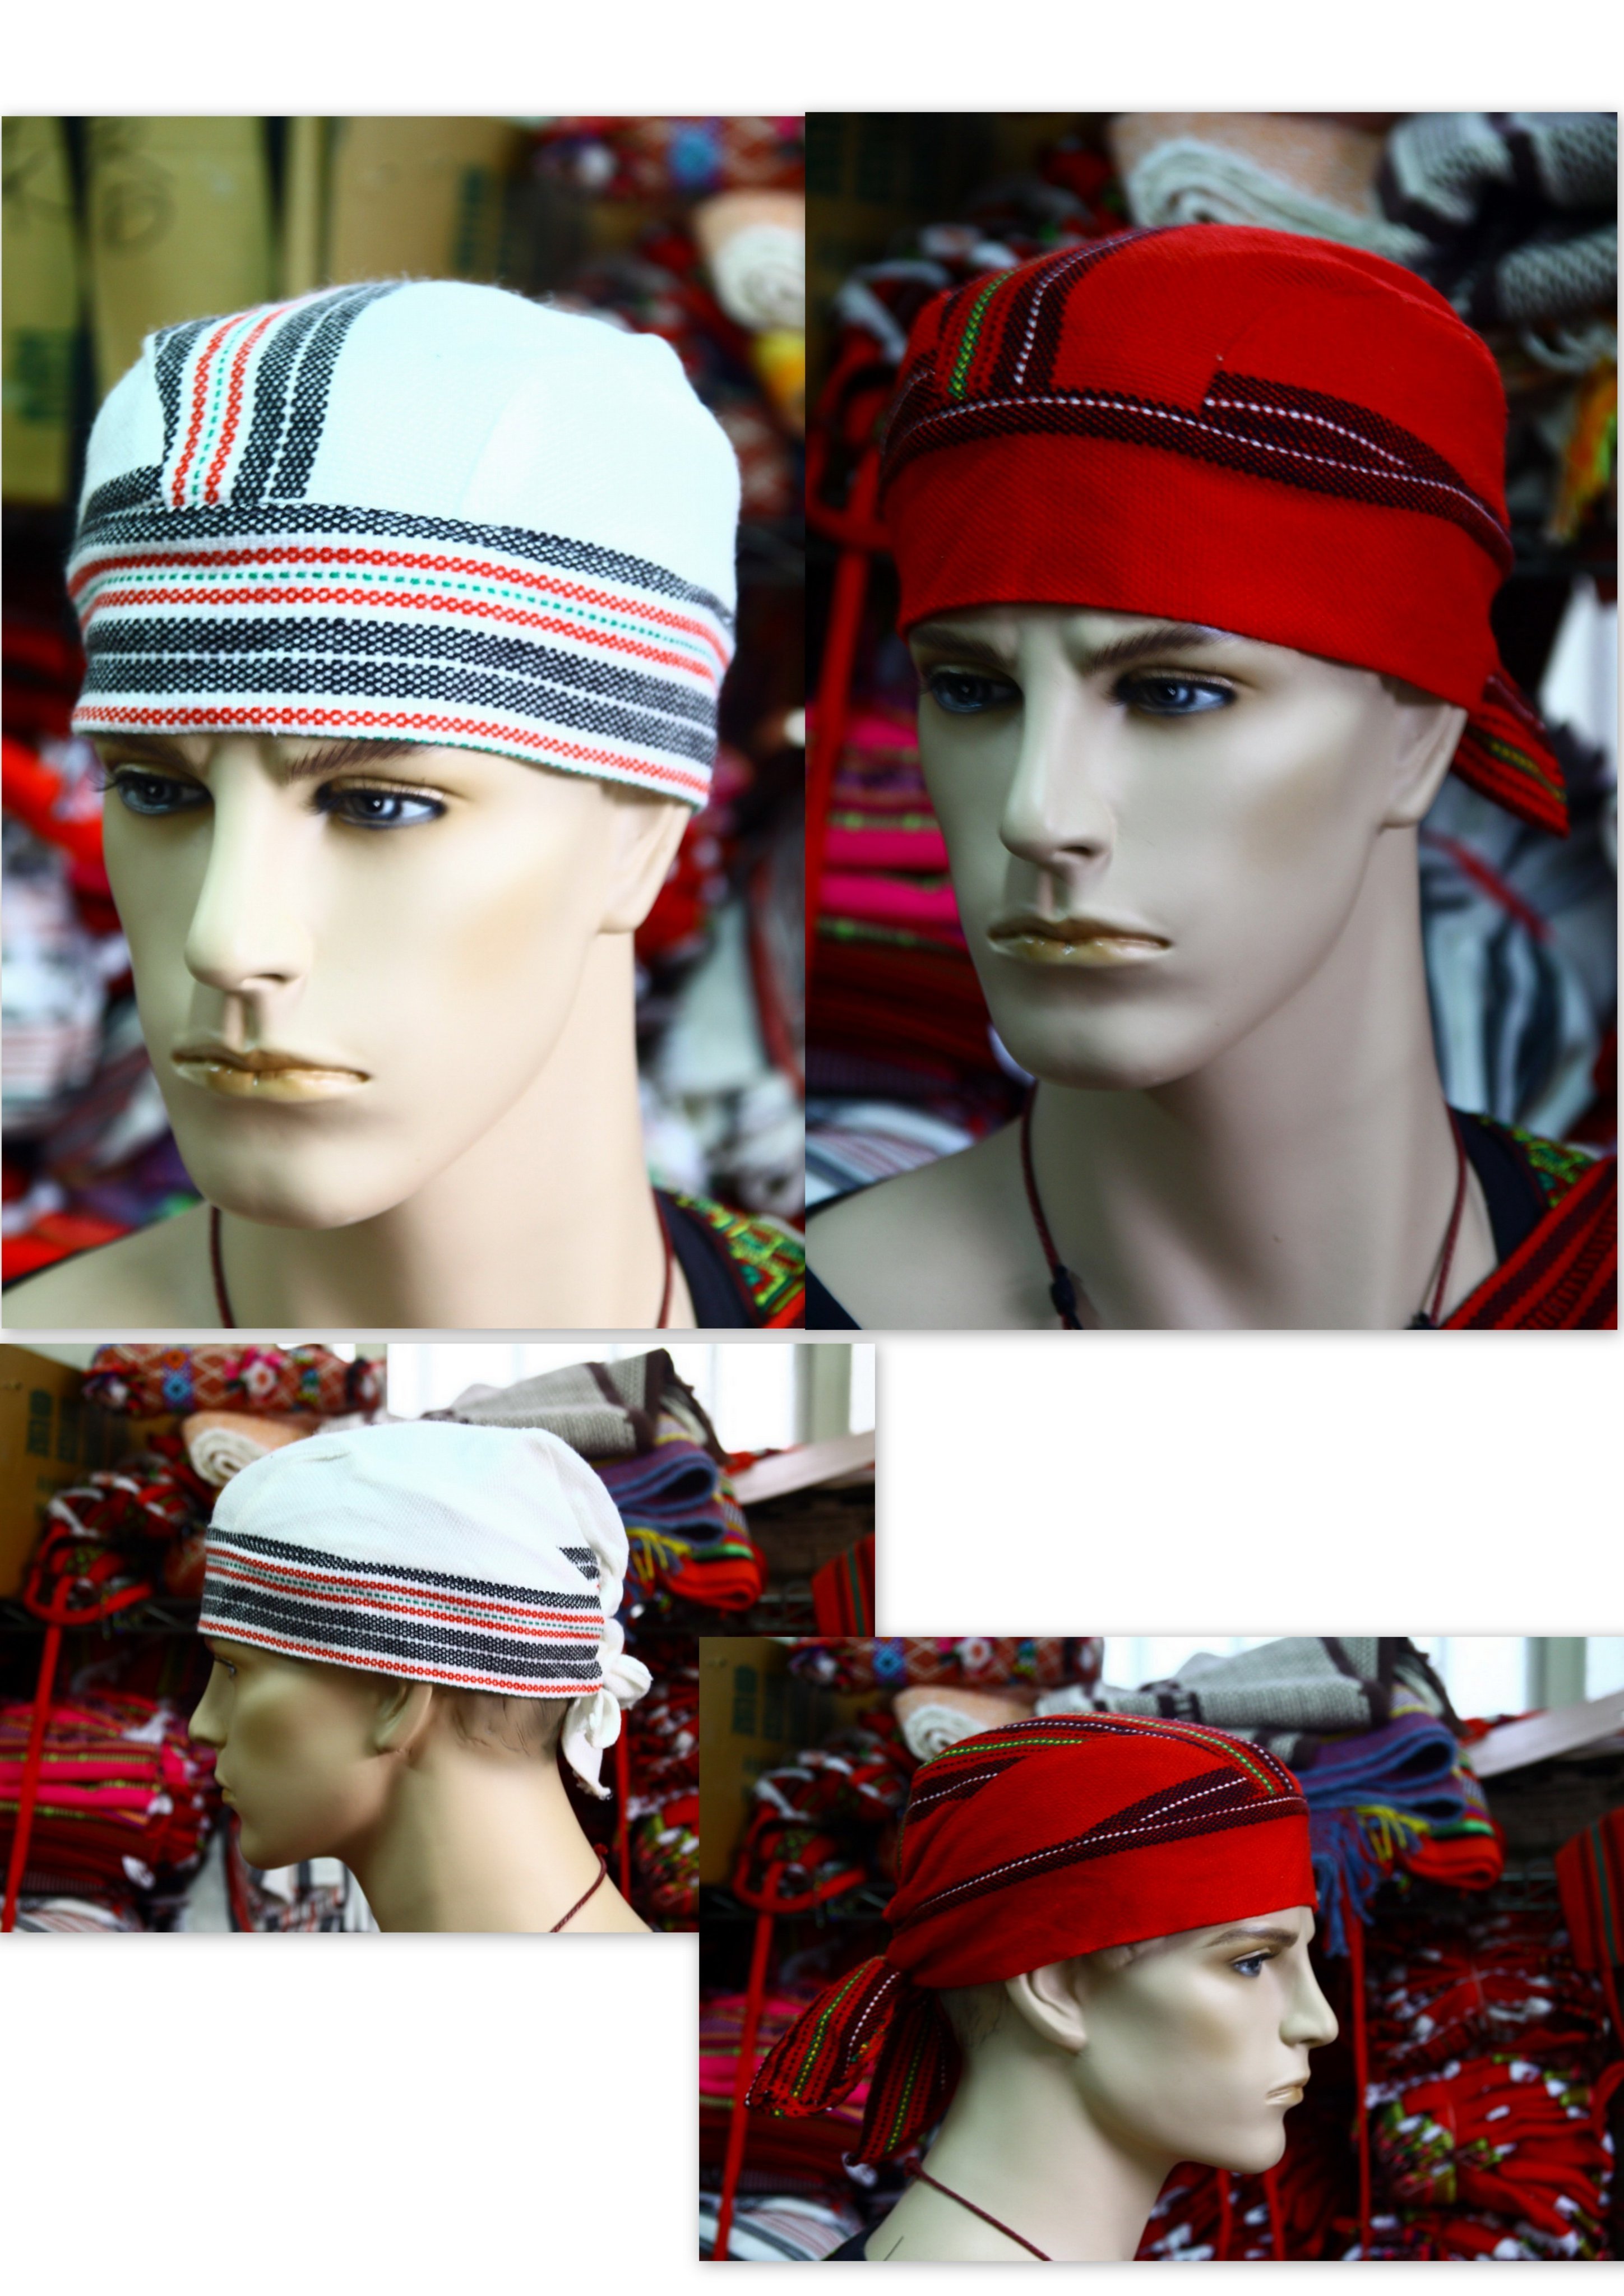 融藝製造 -- 原住民服飾&amp;布料 -- 原住民傳統頭巾.賽德克.泰雅族 -- 200元